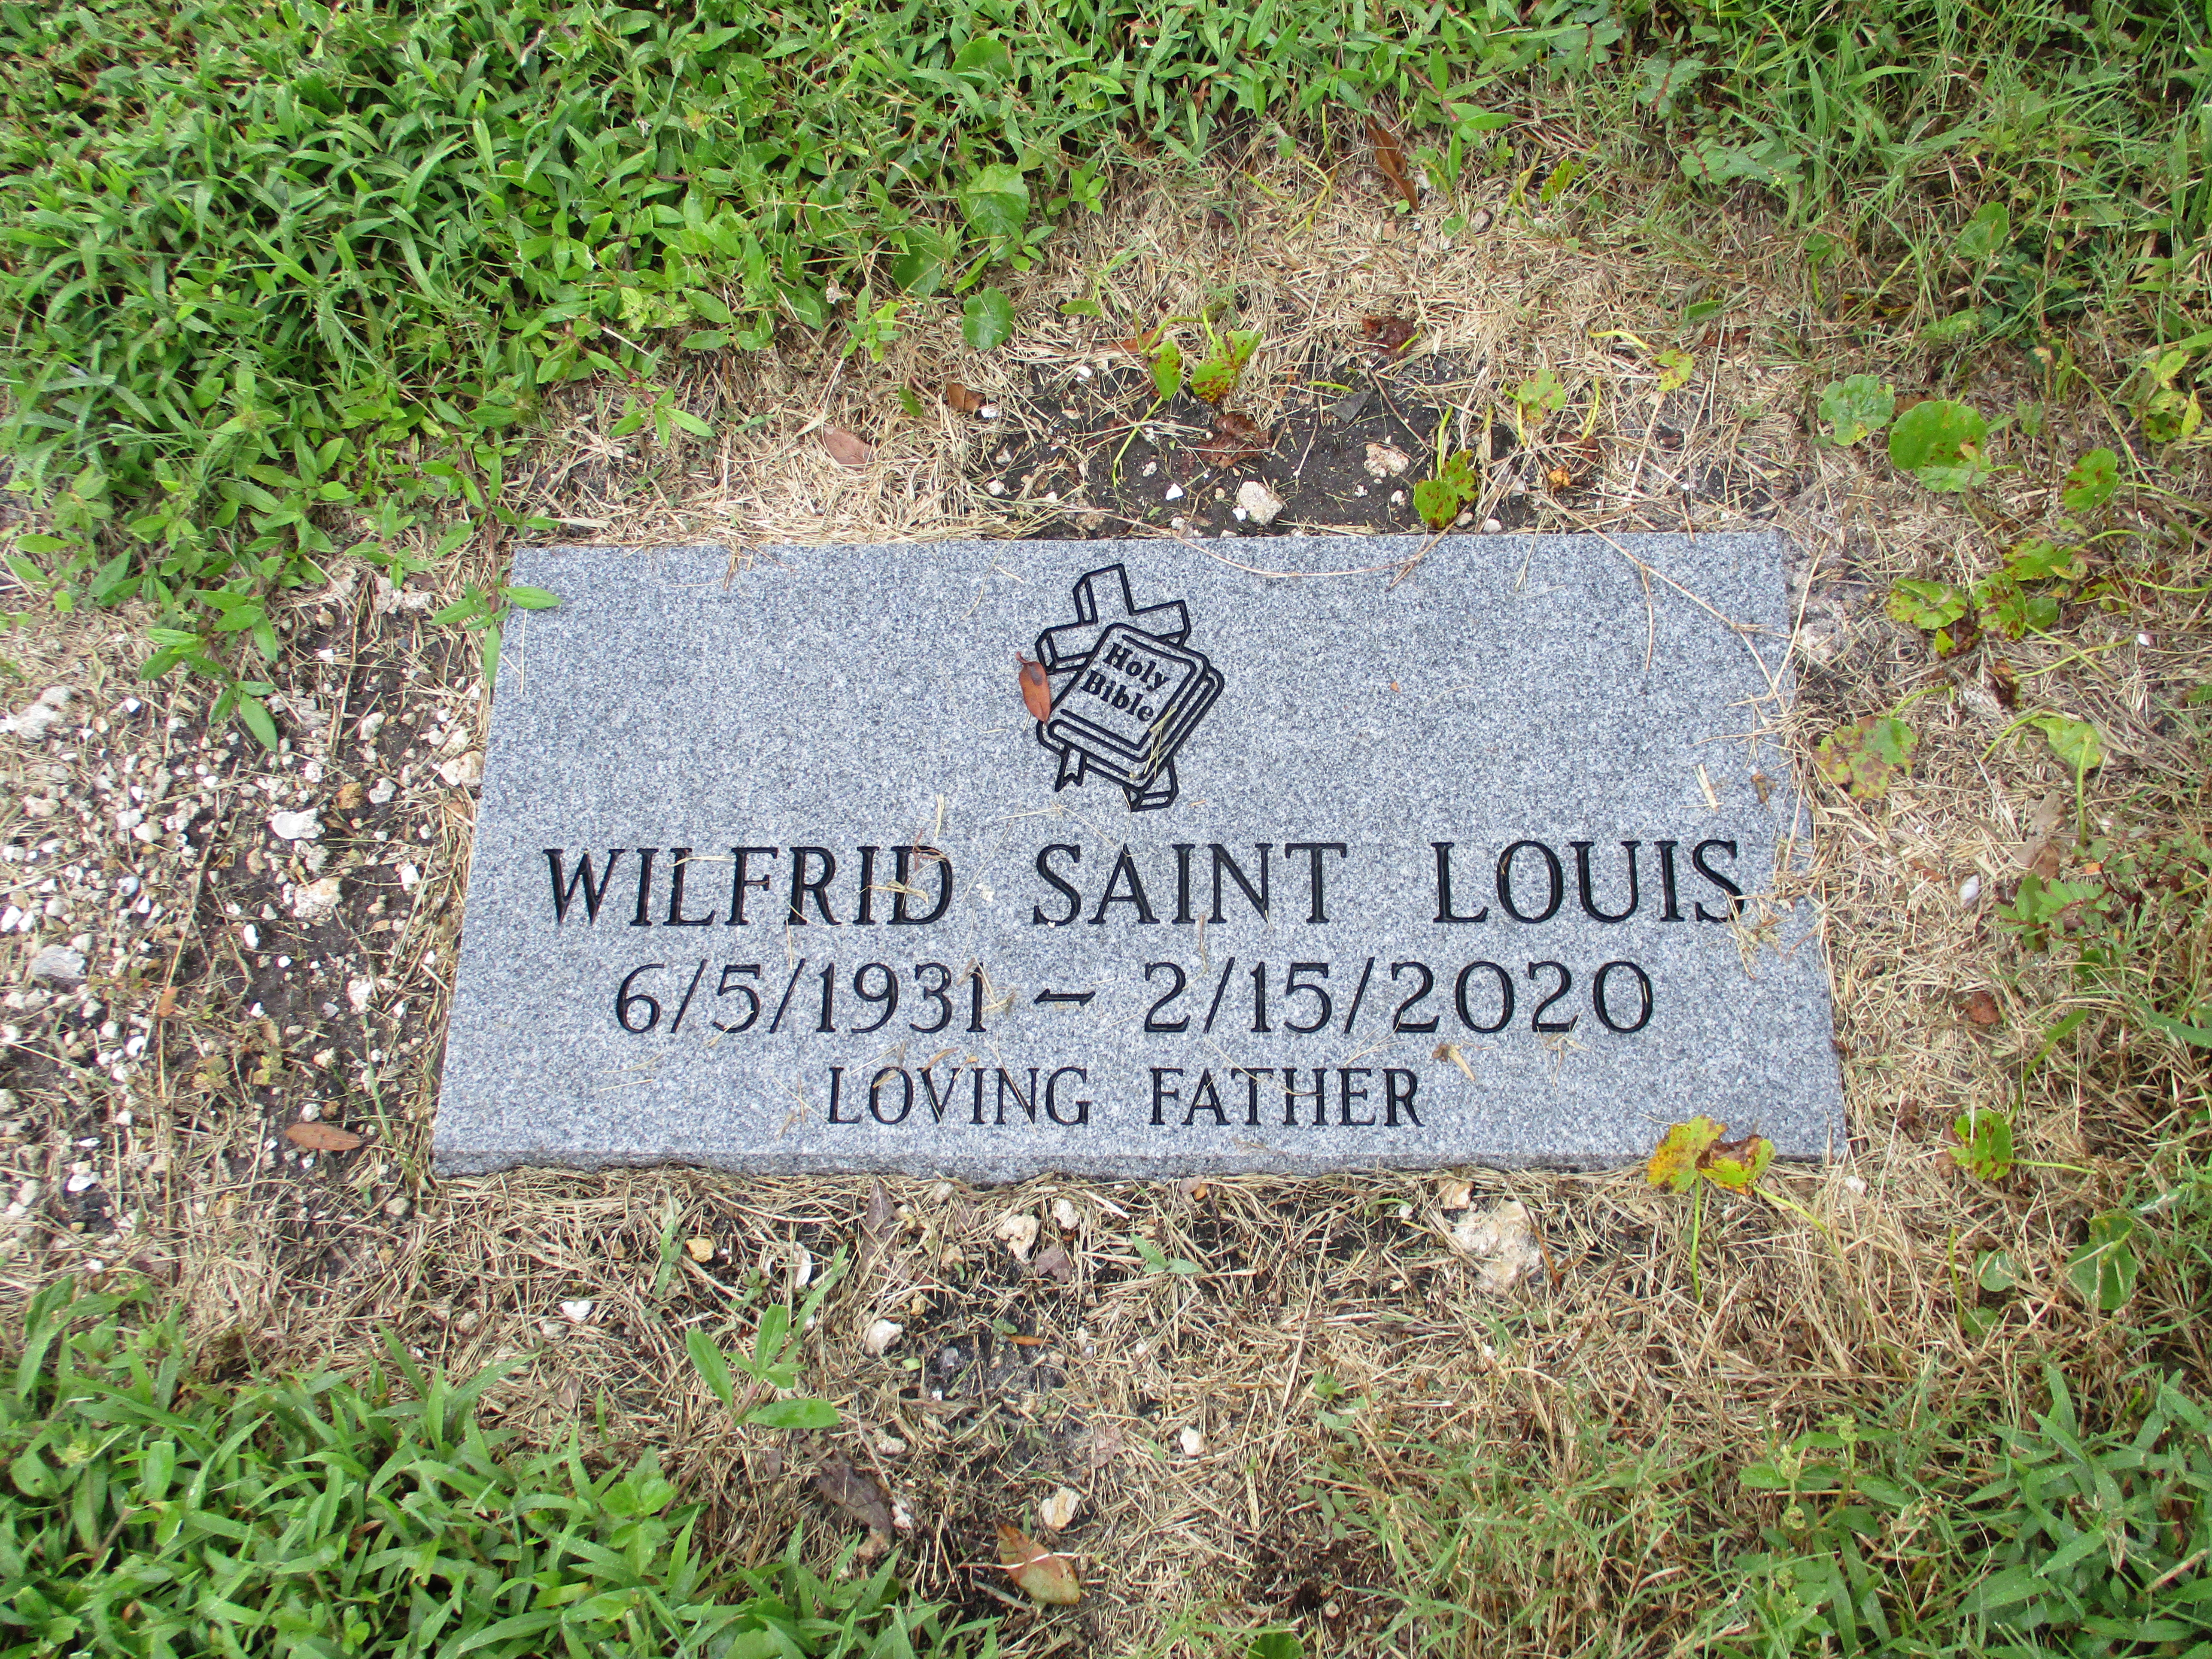 Wilfrid Saint Louis